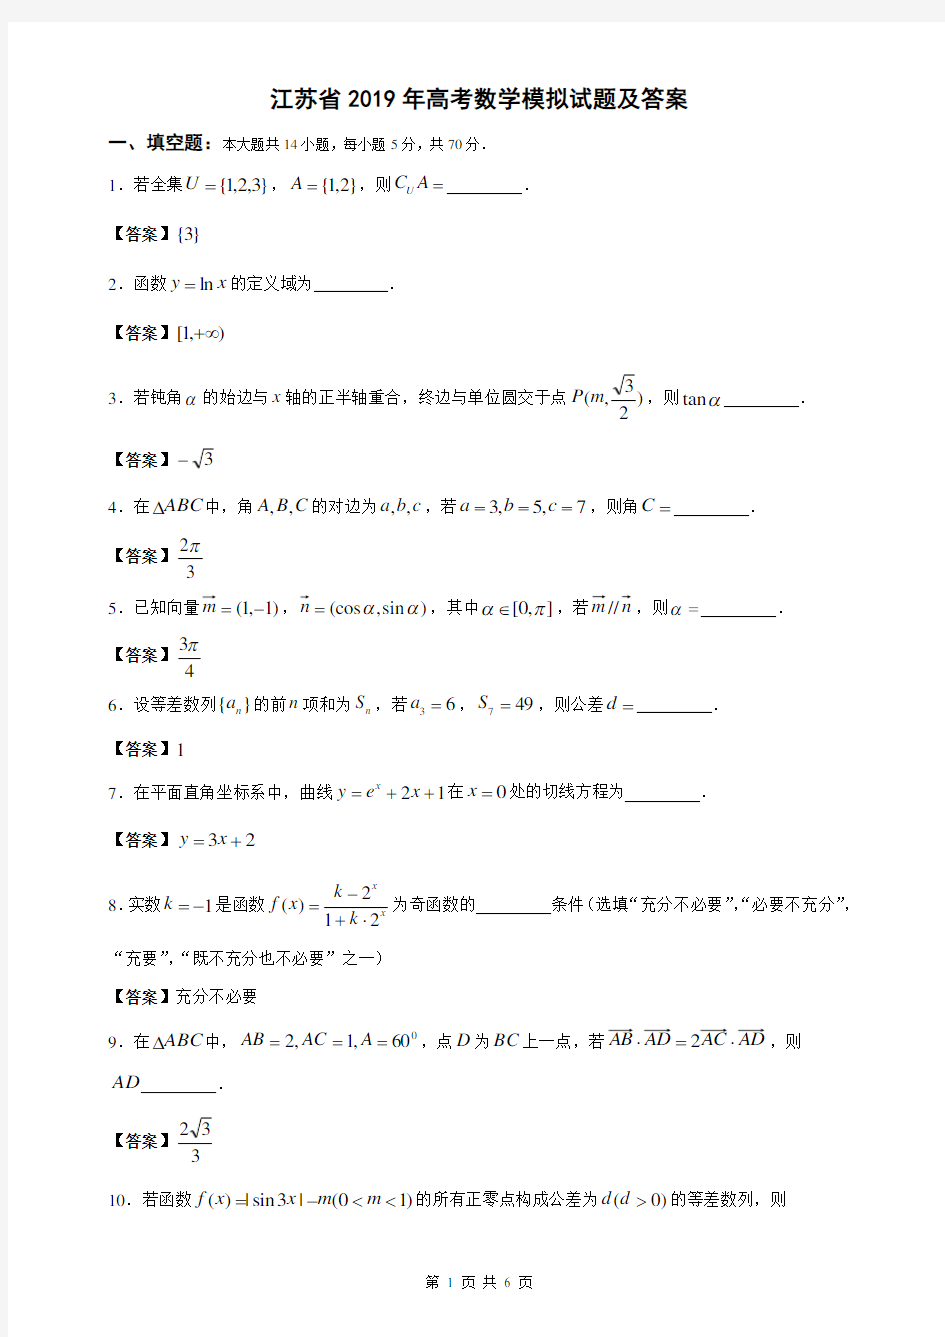 (完整版)江苏省2019年高考数学模拟试题及答案